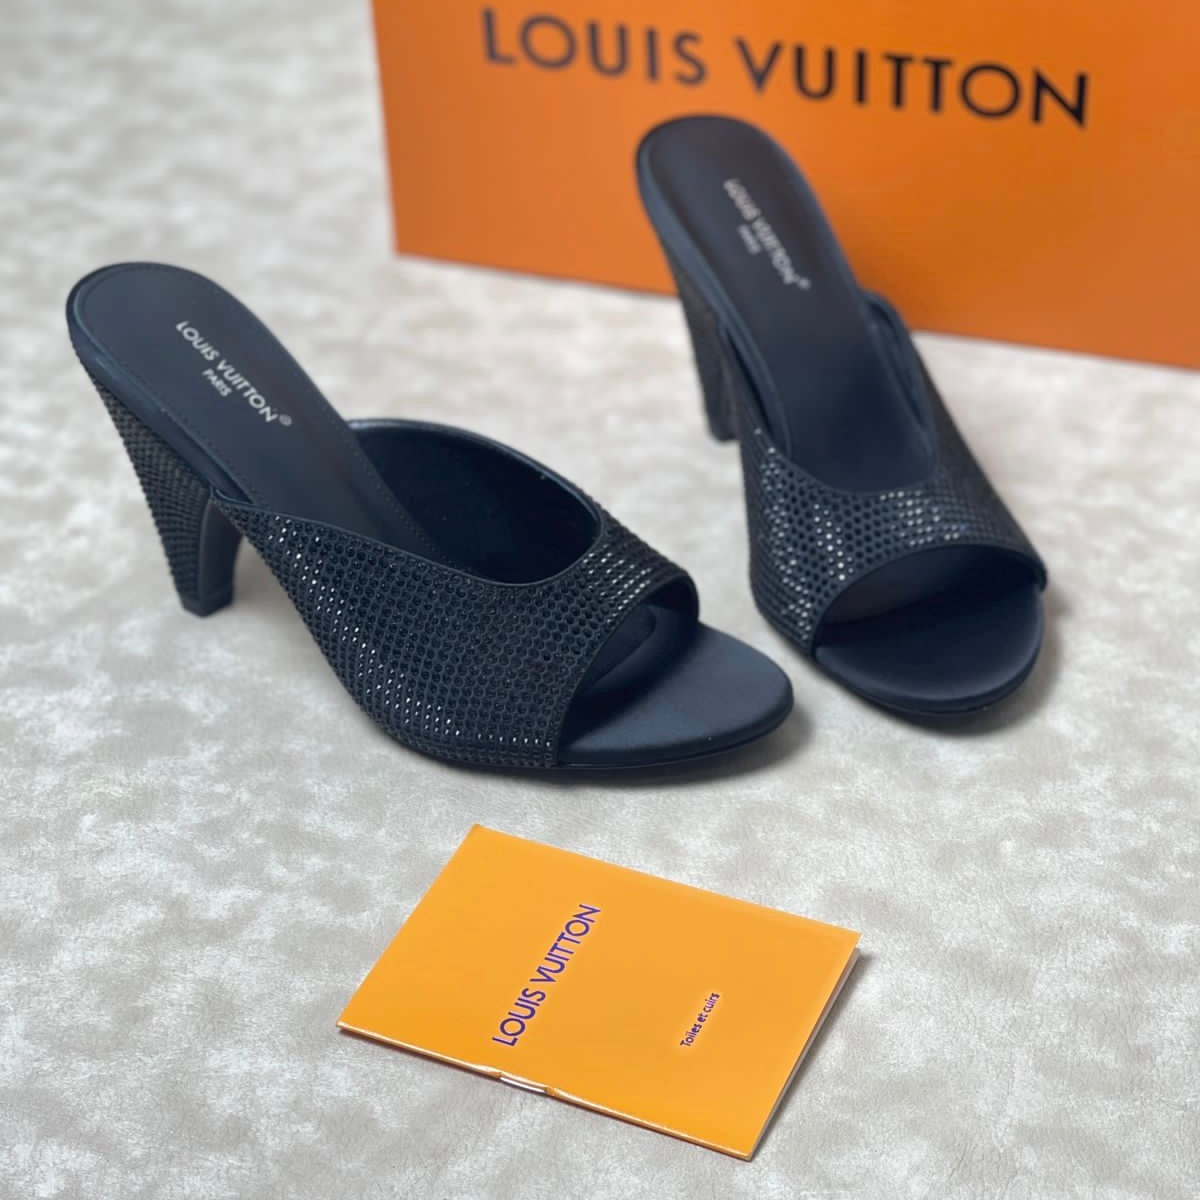 Louis Vuitton Style #5 Shoes